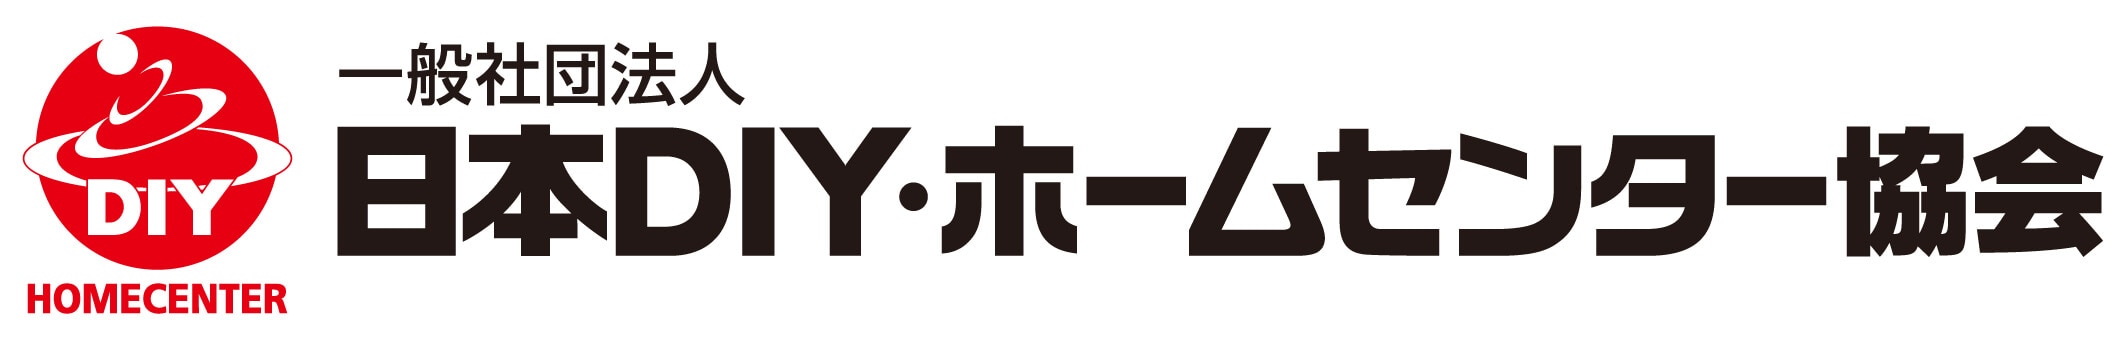 日本DIY・HC協会ロゴ